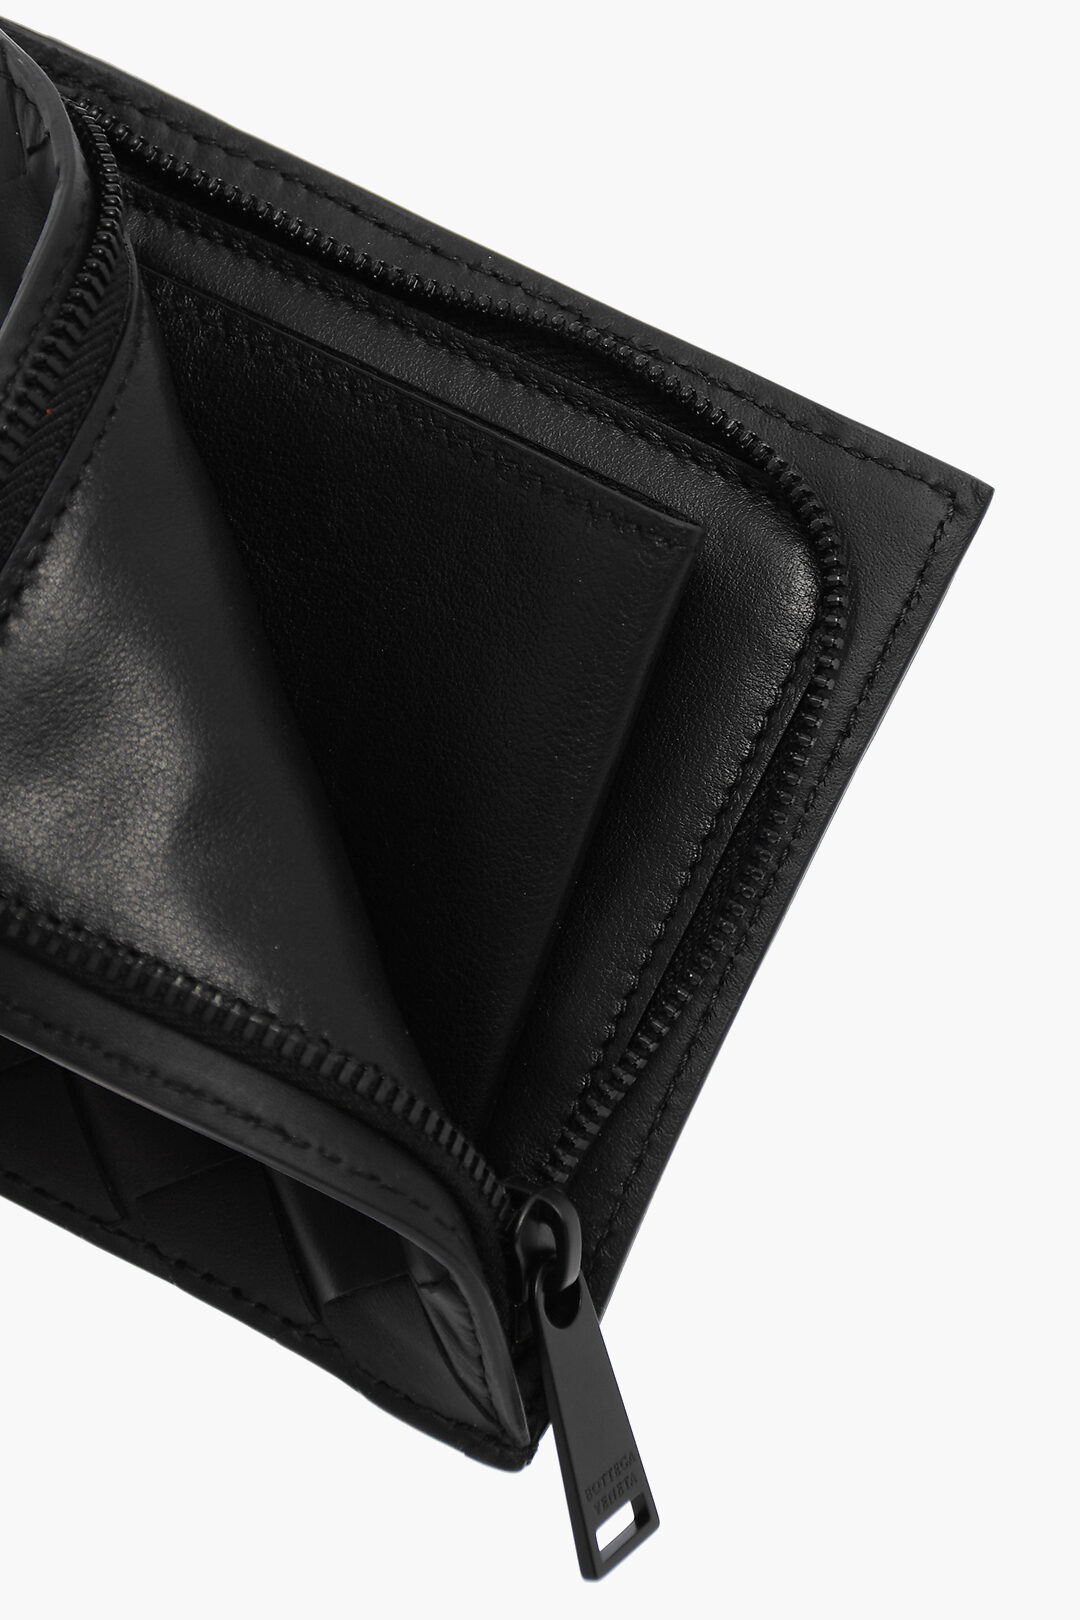 Intreccio Leather Wallet